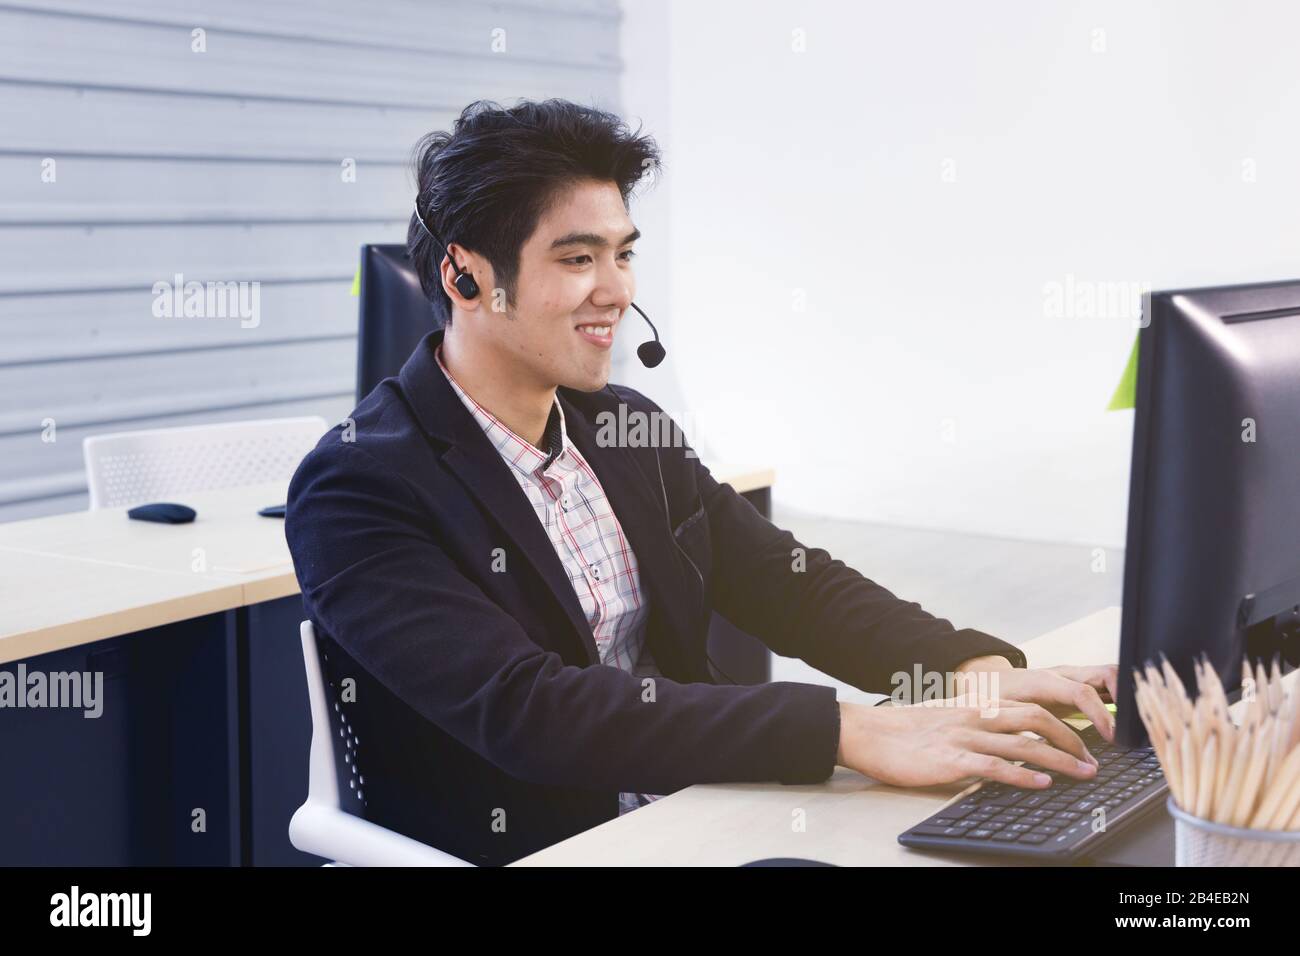 Un opérateur de centre d'appels asiatique souriant utilise un ordinateur pour communiquer avec le client ou effectuer une autre affectation. Banque D'Images